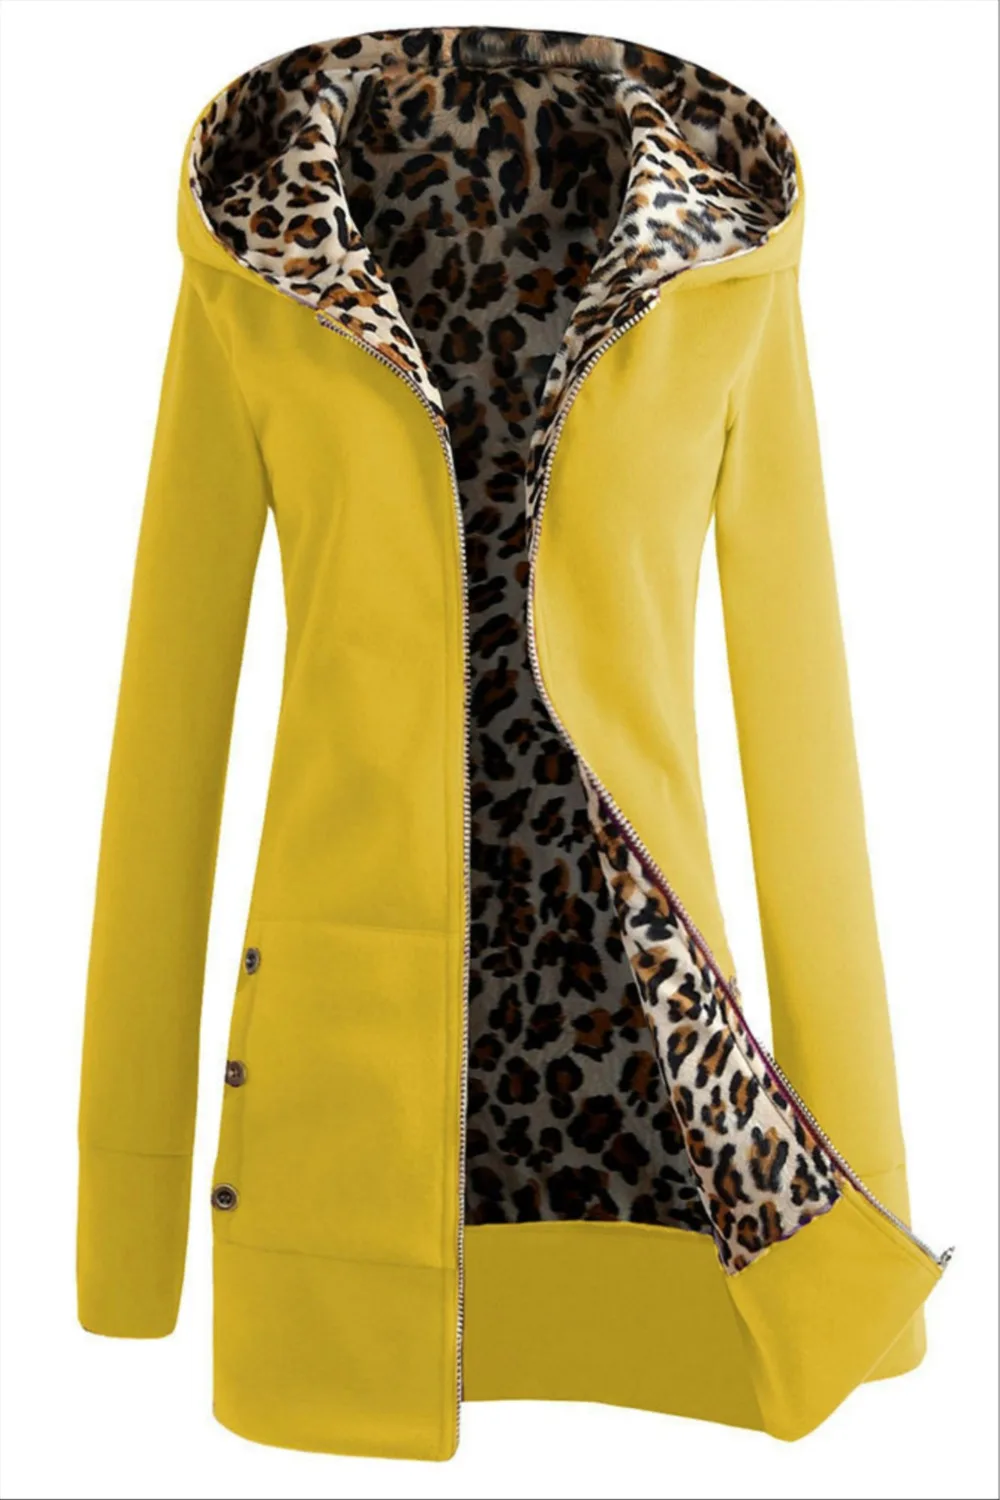 La MaxPa длинный рукав теплая Повседневная Верхняя одежда с капюшоном 2019 Новая мода зимние женские толстовки пальто леопардовая флисовая